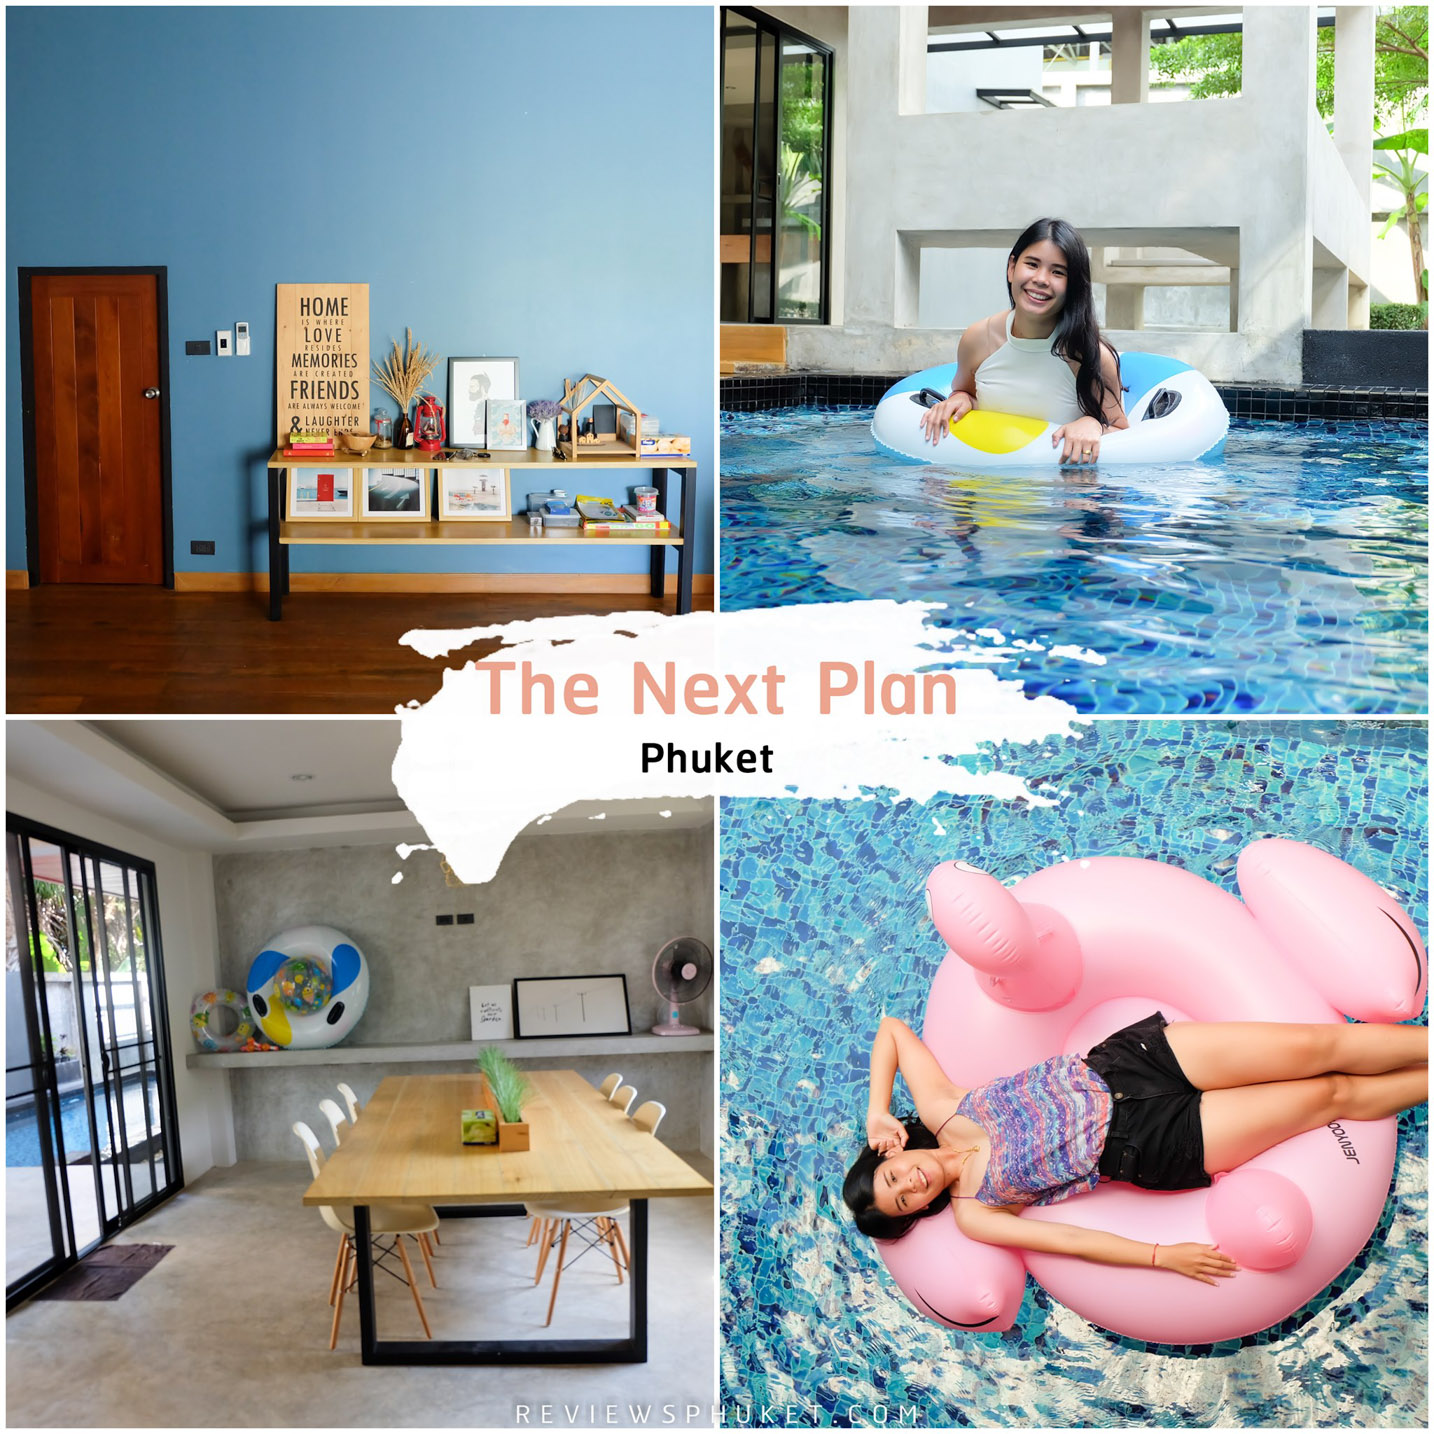 The-Next-Plan-Phuket -ที่พักน่ารักสไตล์มินิมอล-จะมากับเพื่อน-กับแฟน-กับครอบครัวก็ได้หมดด-ที่พักสไตล์-Loft-ดูเรียบสบายตาง่ายๆ--เป็น-Pool-villa-เนื้อที่ทั้งหมด-500--ตารางเมตร-มีทั้งหมด-3-ห้องนอน,-4-ห้องน้ำ,-ห้องครัว-,สระว่ายน้ำ-และห้องนั่งเล่น,--กว้างมวากบอกเลยต้องห้ามพลาด ที่พักภูเก็ต,ที่พักหรู,วิวหลักล้าน,ริมทะเล,โรงแรม,รีสอร์ท,Phuket,หาดสวย,น้ำใส